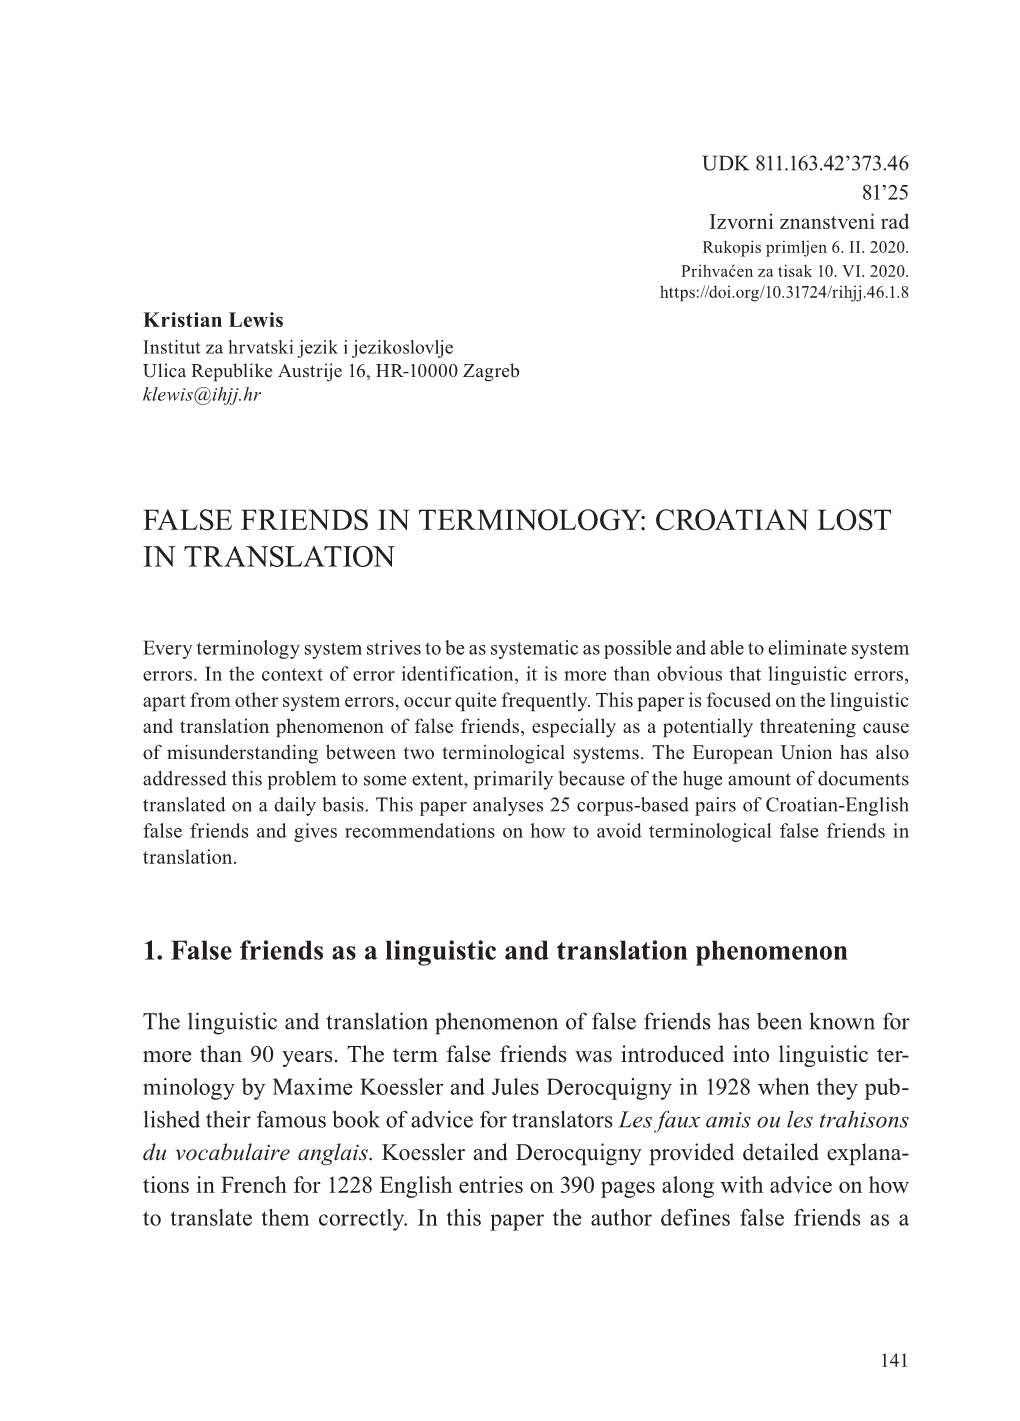 False Friends in Terminology: Croatian Lost in Translation